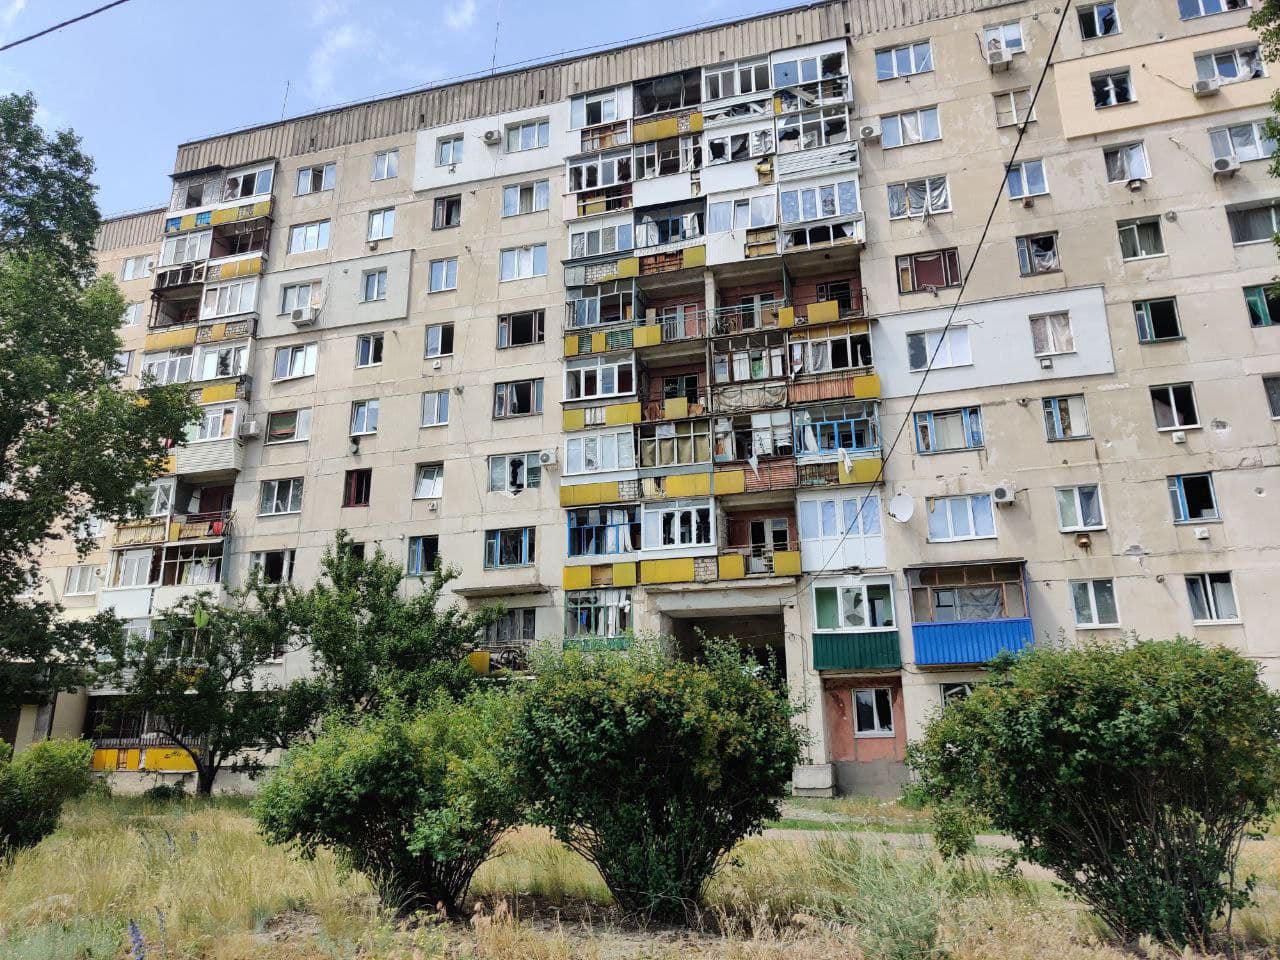 Как прошло 7 июня в Луганской области. Погибший, раненый и разрушения 3